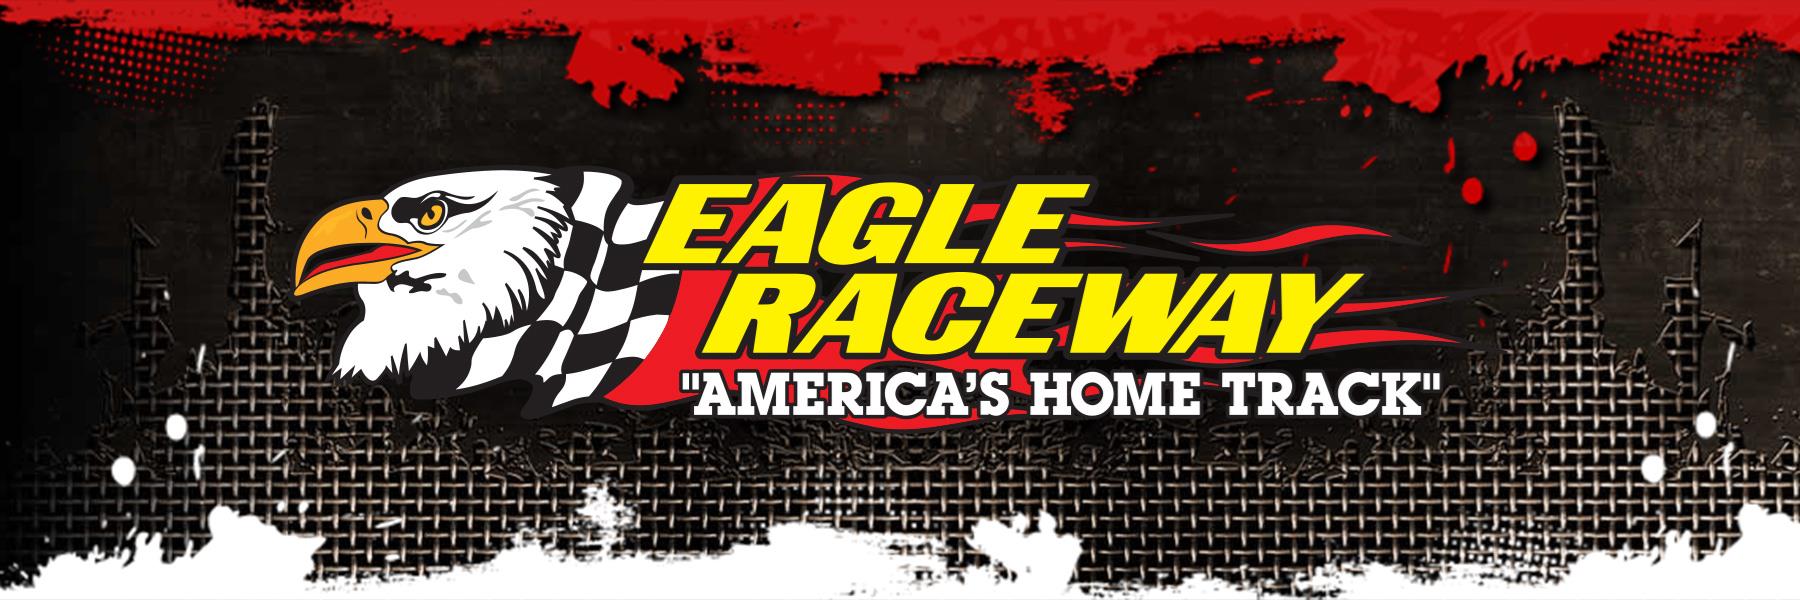 7/20/2013 - Eagle Raceway